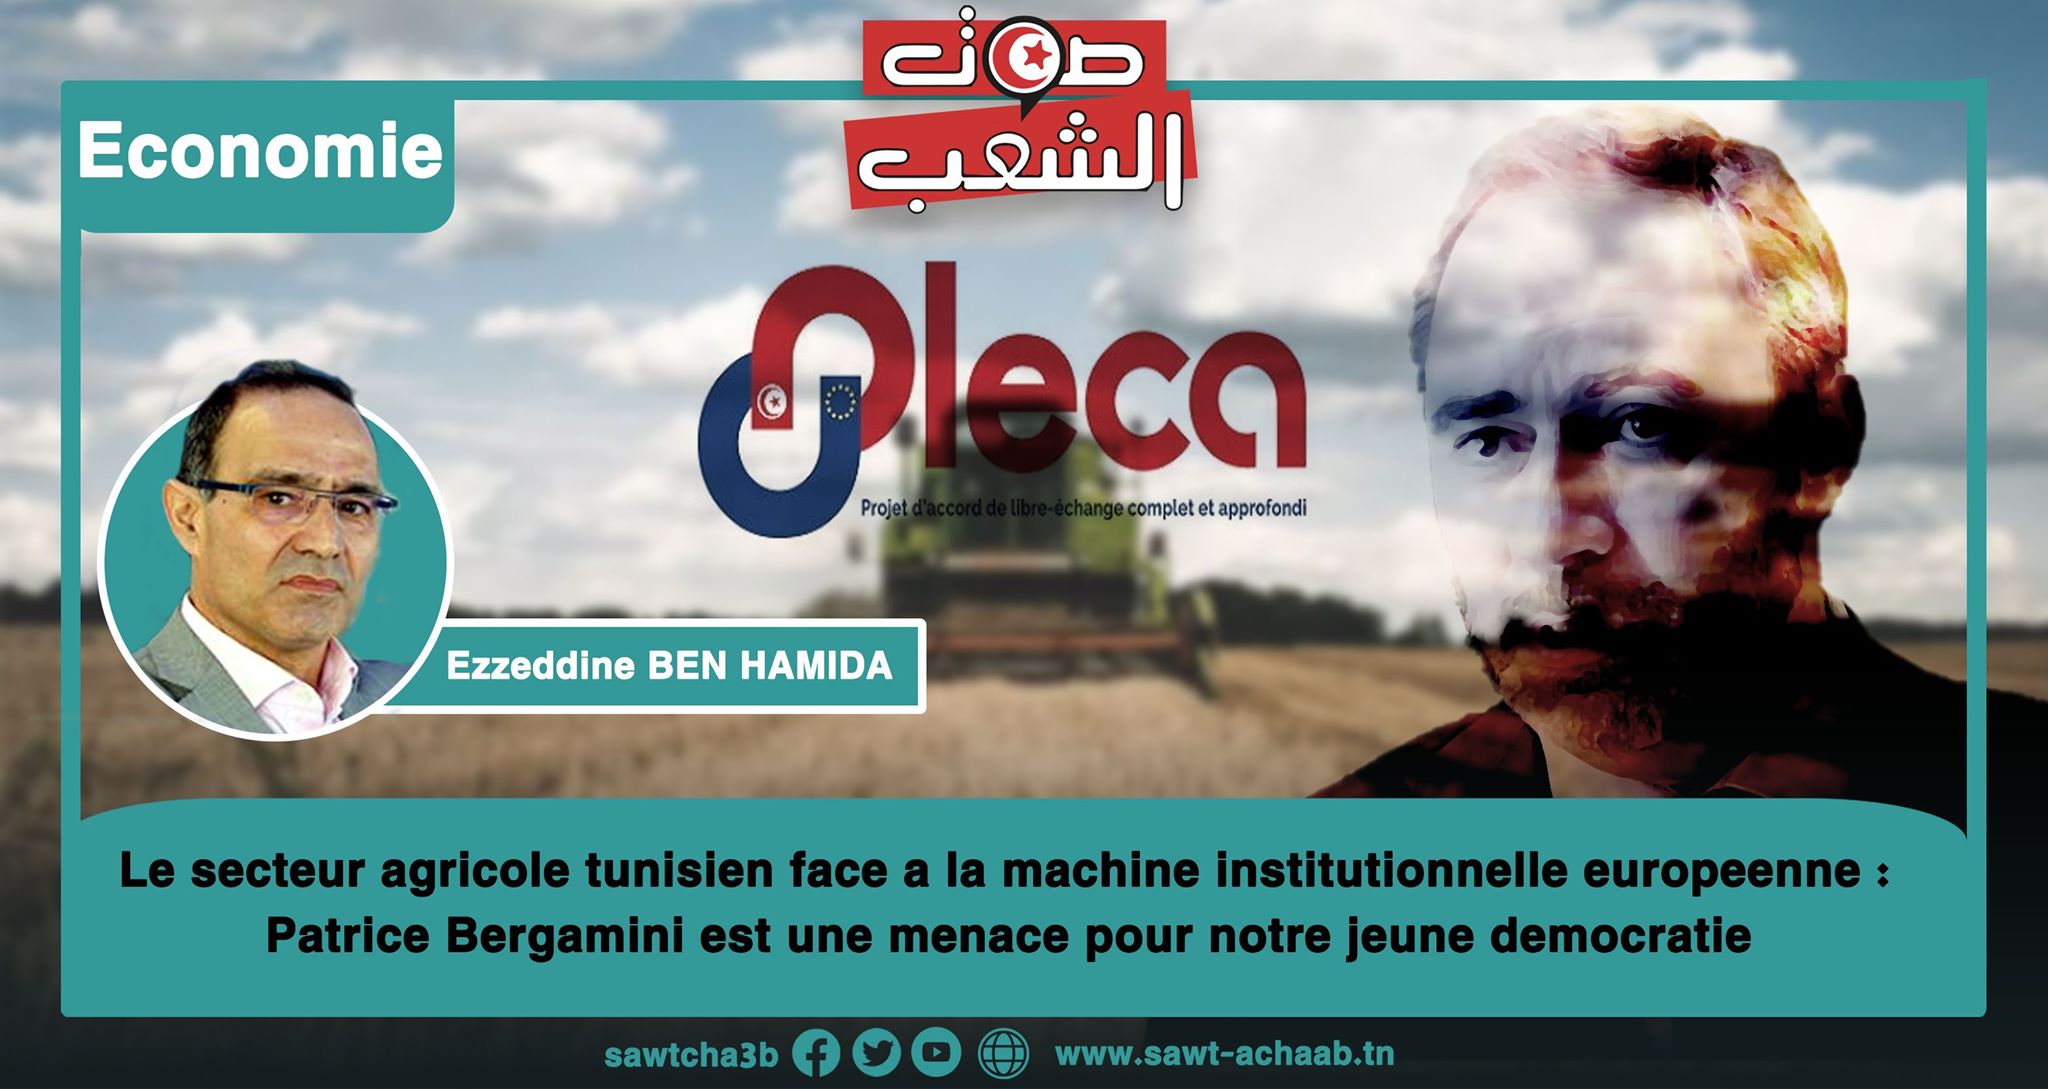 Le secteur agricole tunisien face à la machine institutionnelle européenne : Patrice Bergamini est une menace pour notre jeune démocratie